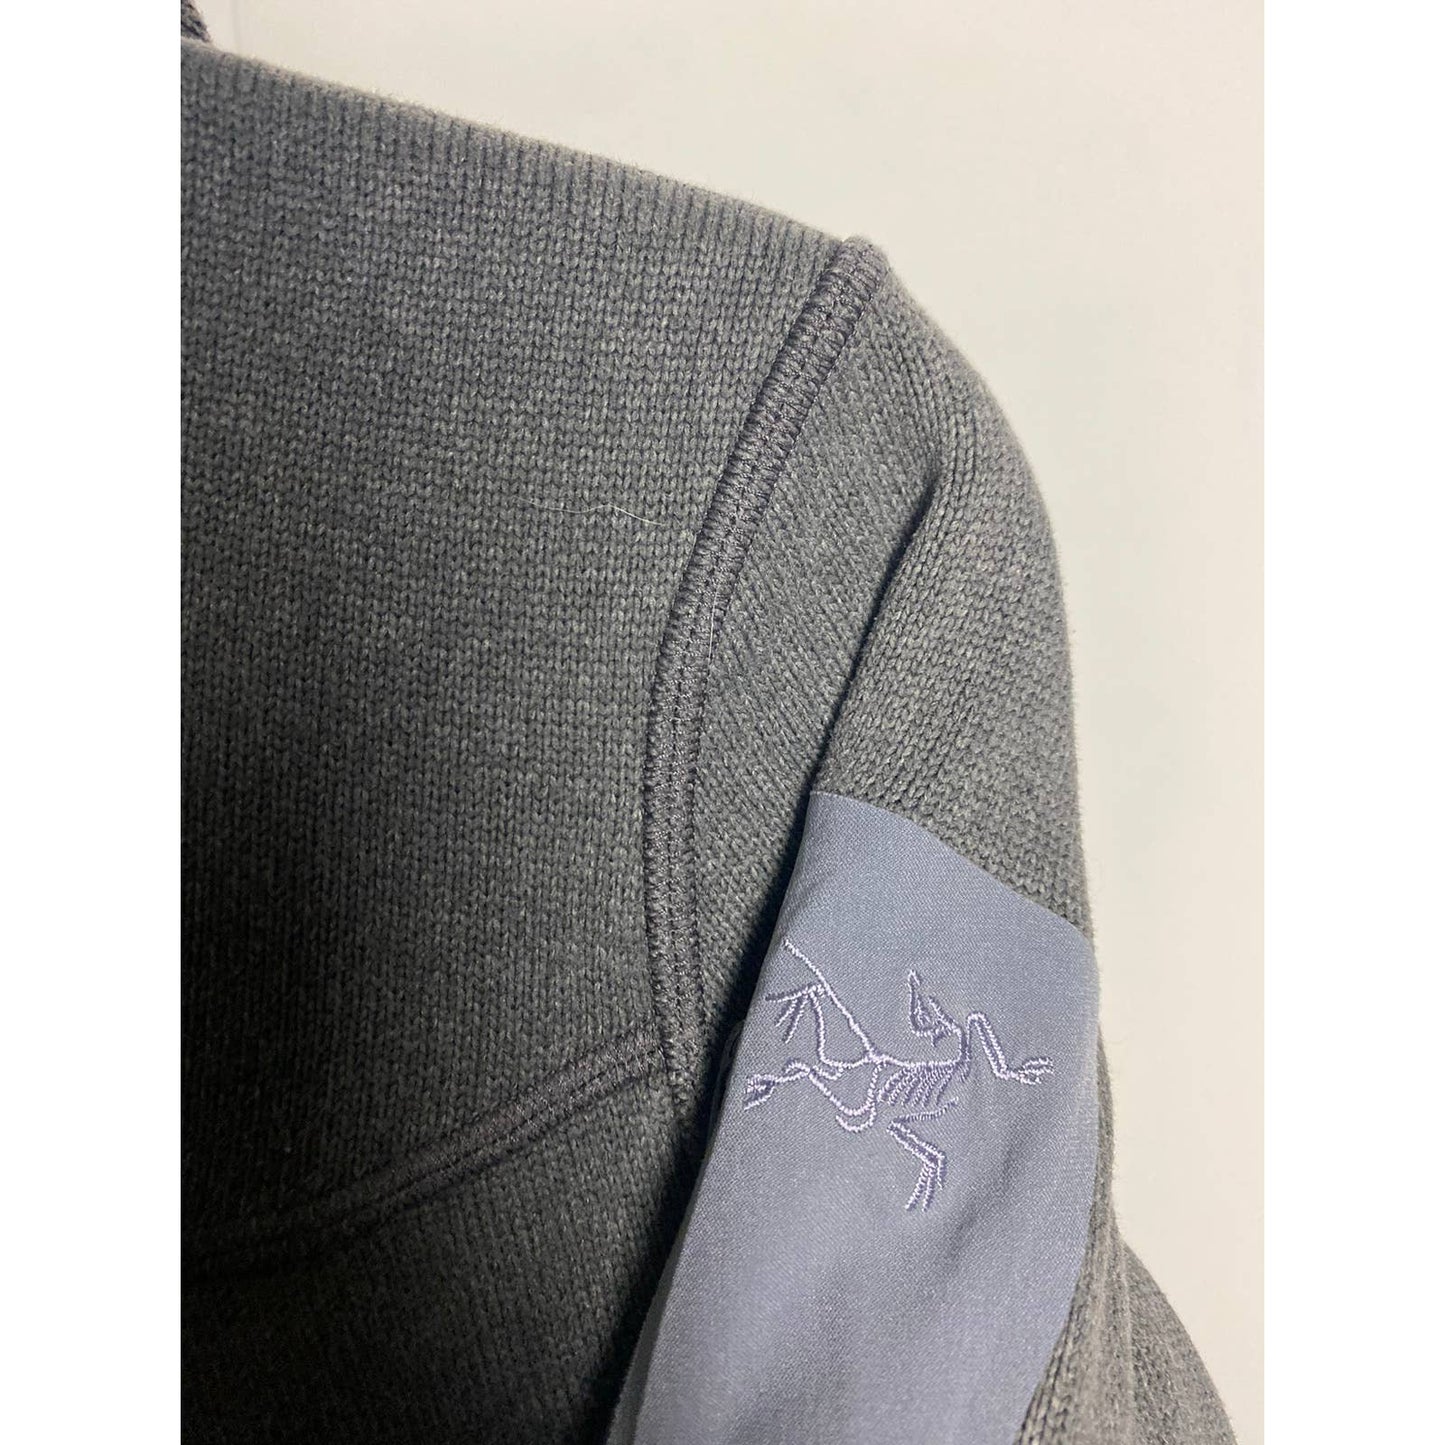 Arc’teryx vintage grey fleece zip hoodie